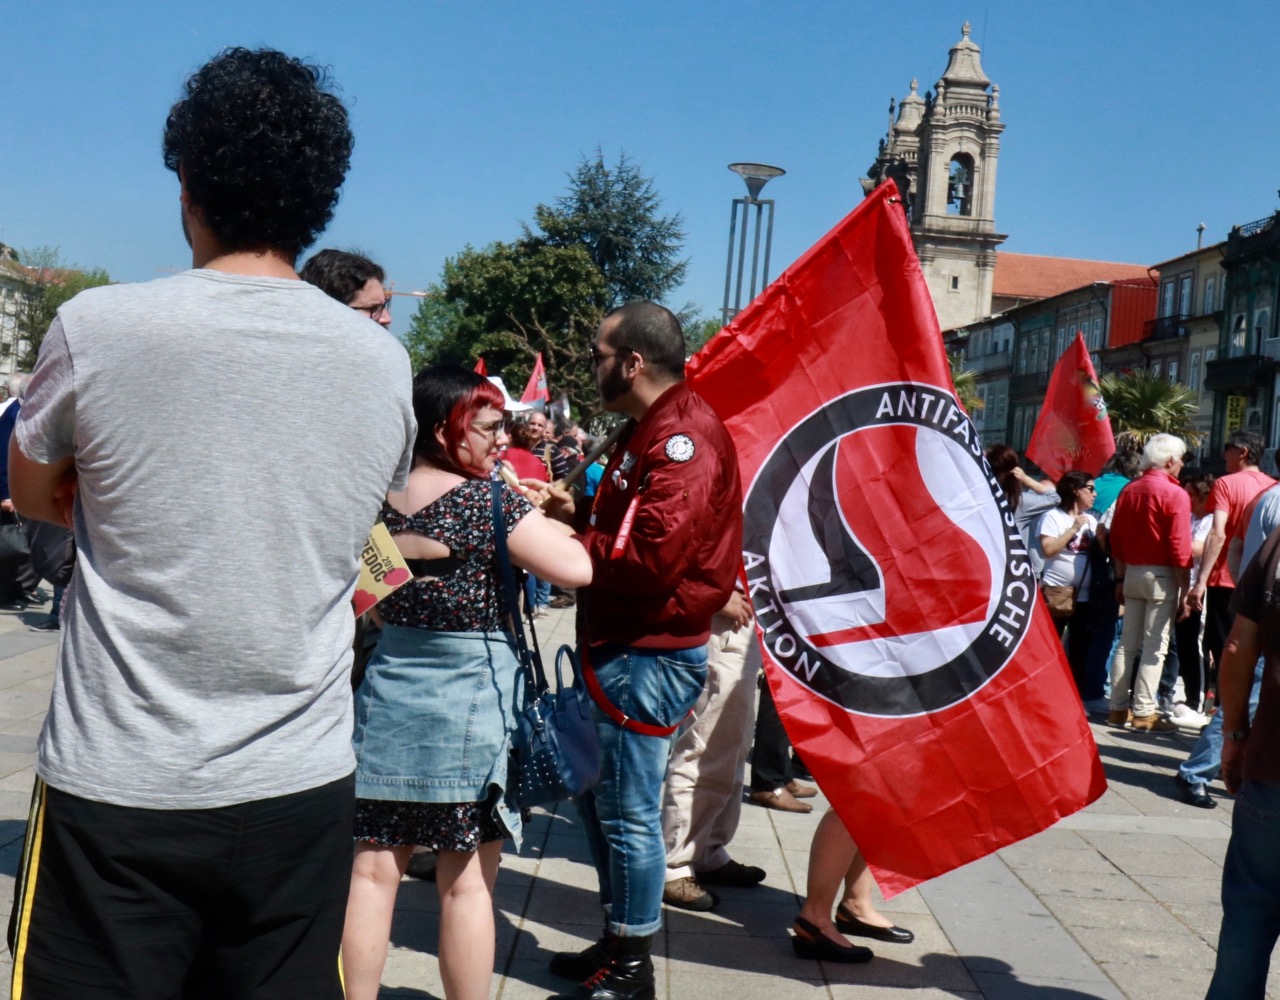 Antifascistas discutem em Braga crescimento da "extrema direita em Portugal"